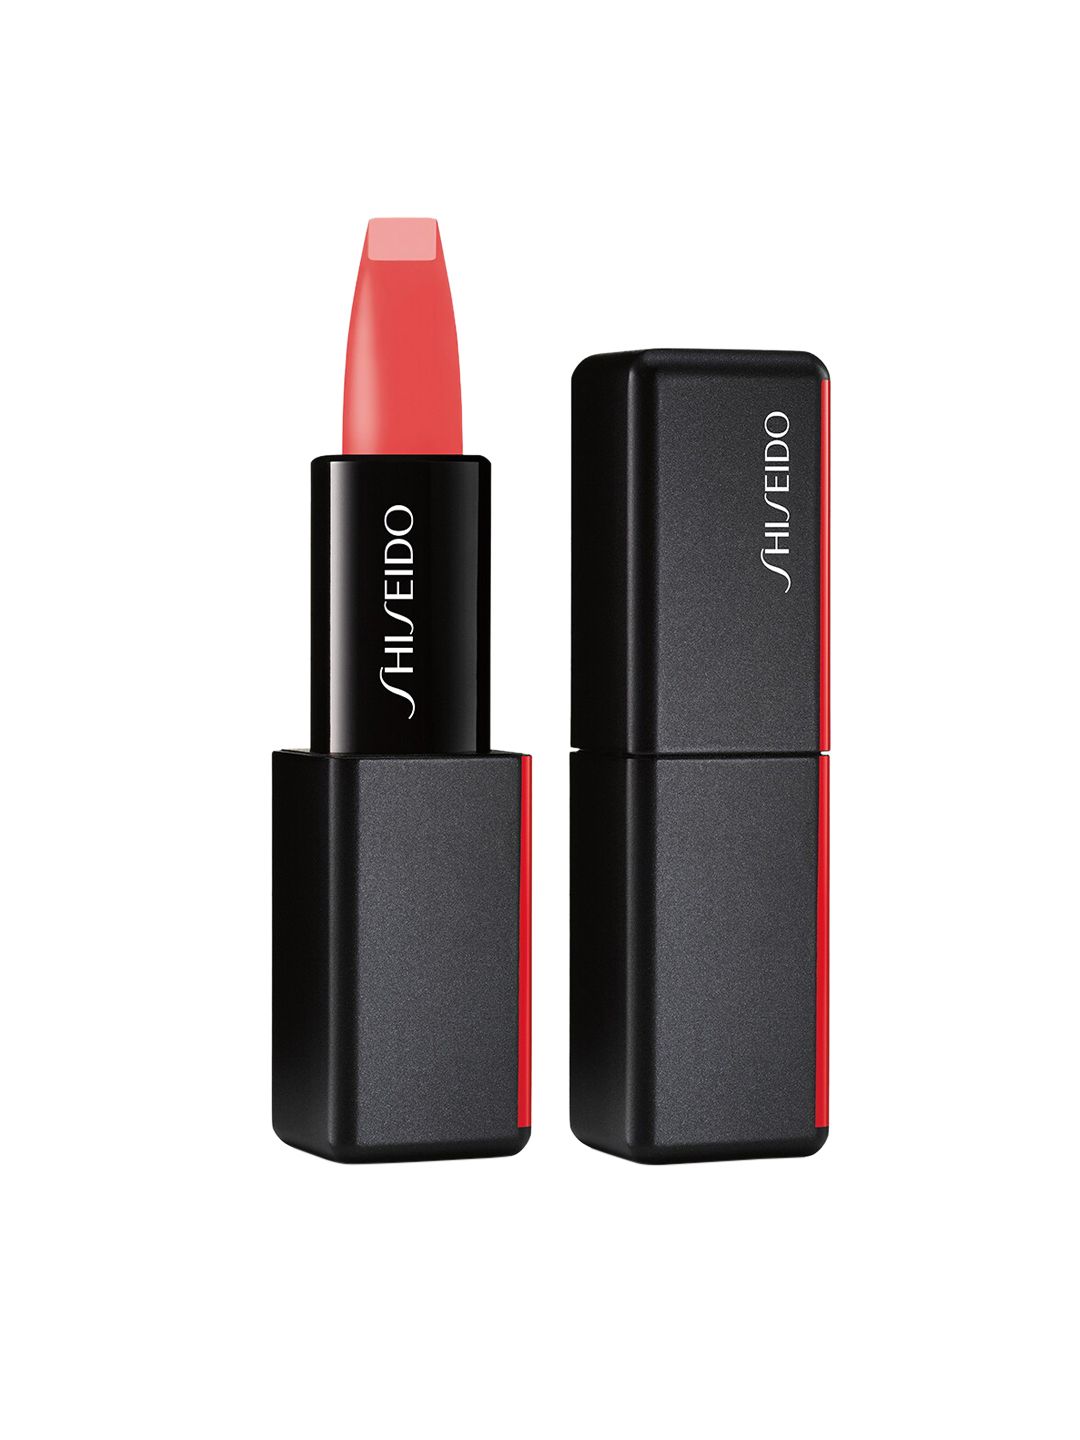 SHISEIDO Modermatte Powder Lipstick Sound Check 525 Price in India